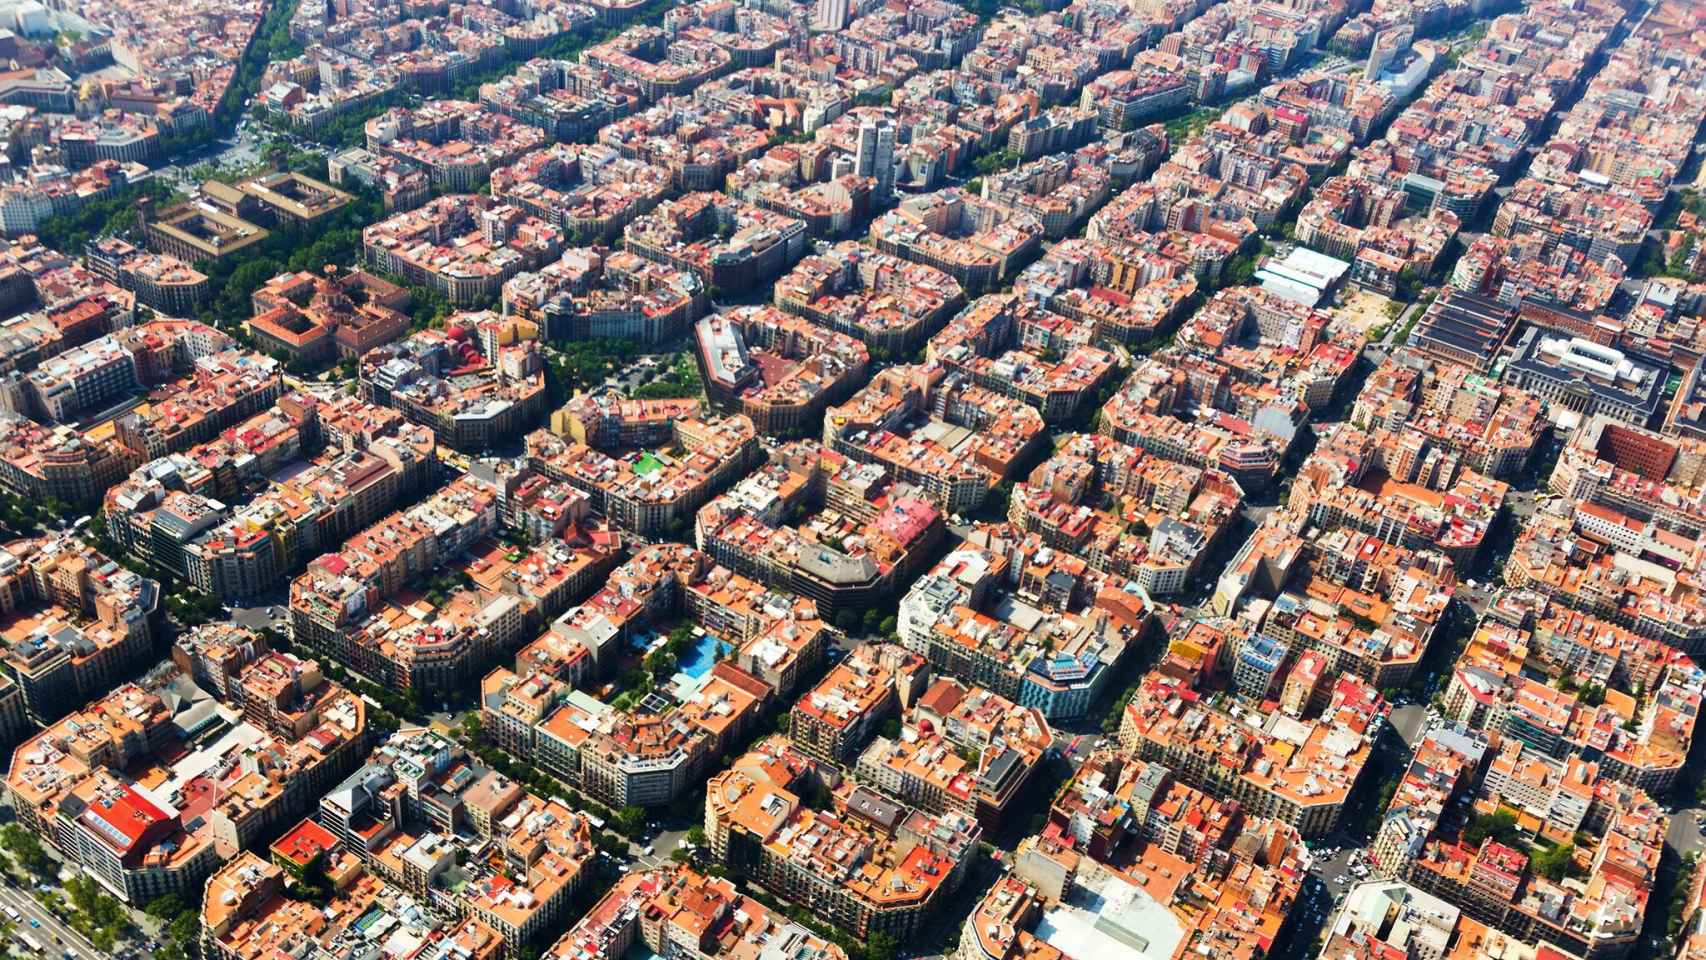 El distrito del Eixample de Barcelona ocupa la parte central de la ciudad y fue diseñado por Ildefons Cerdá